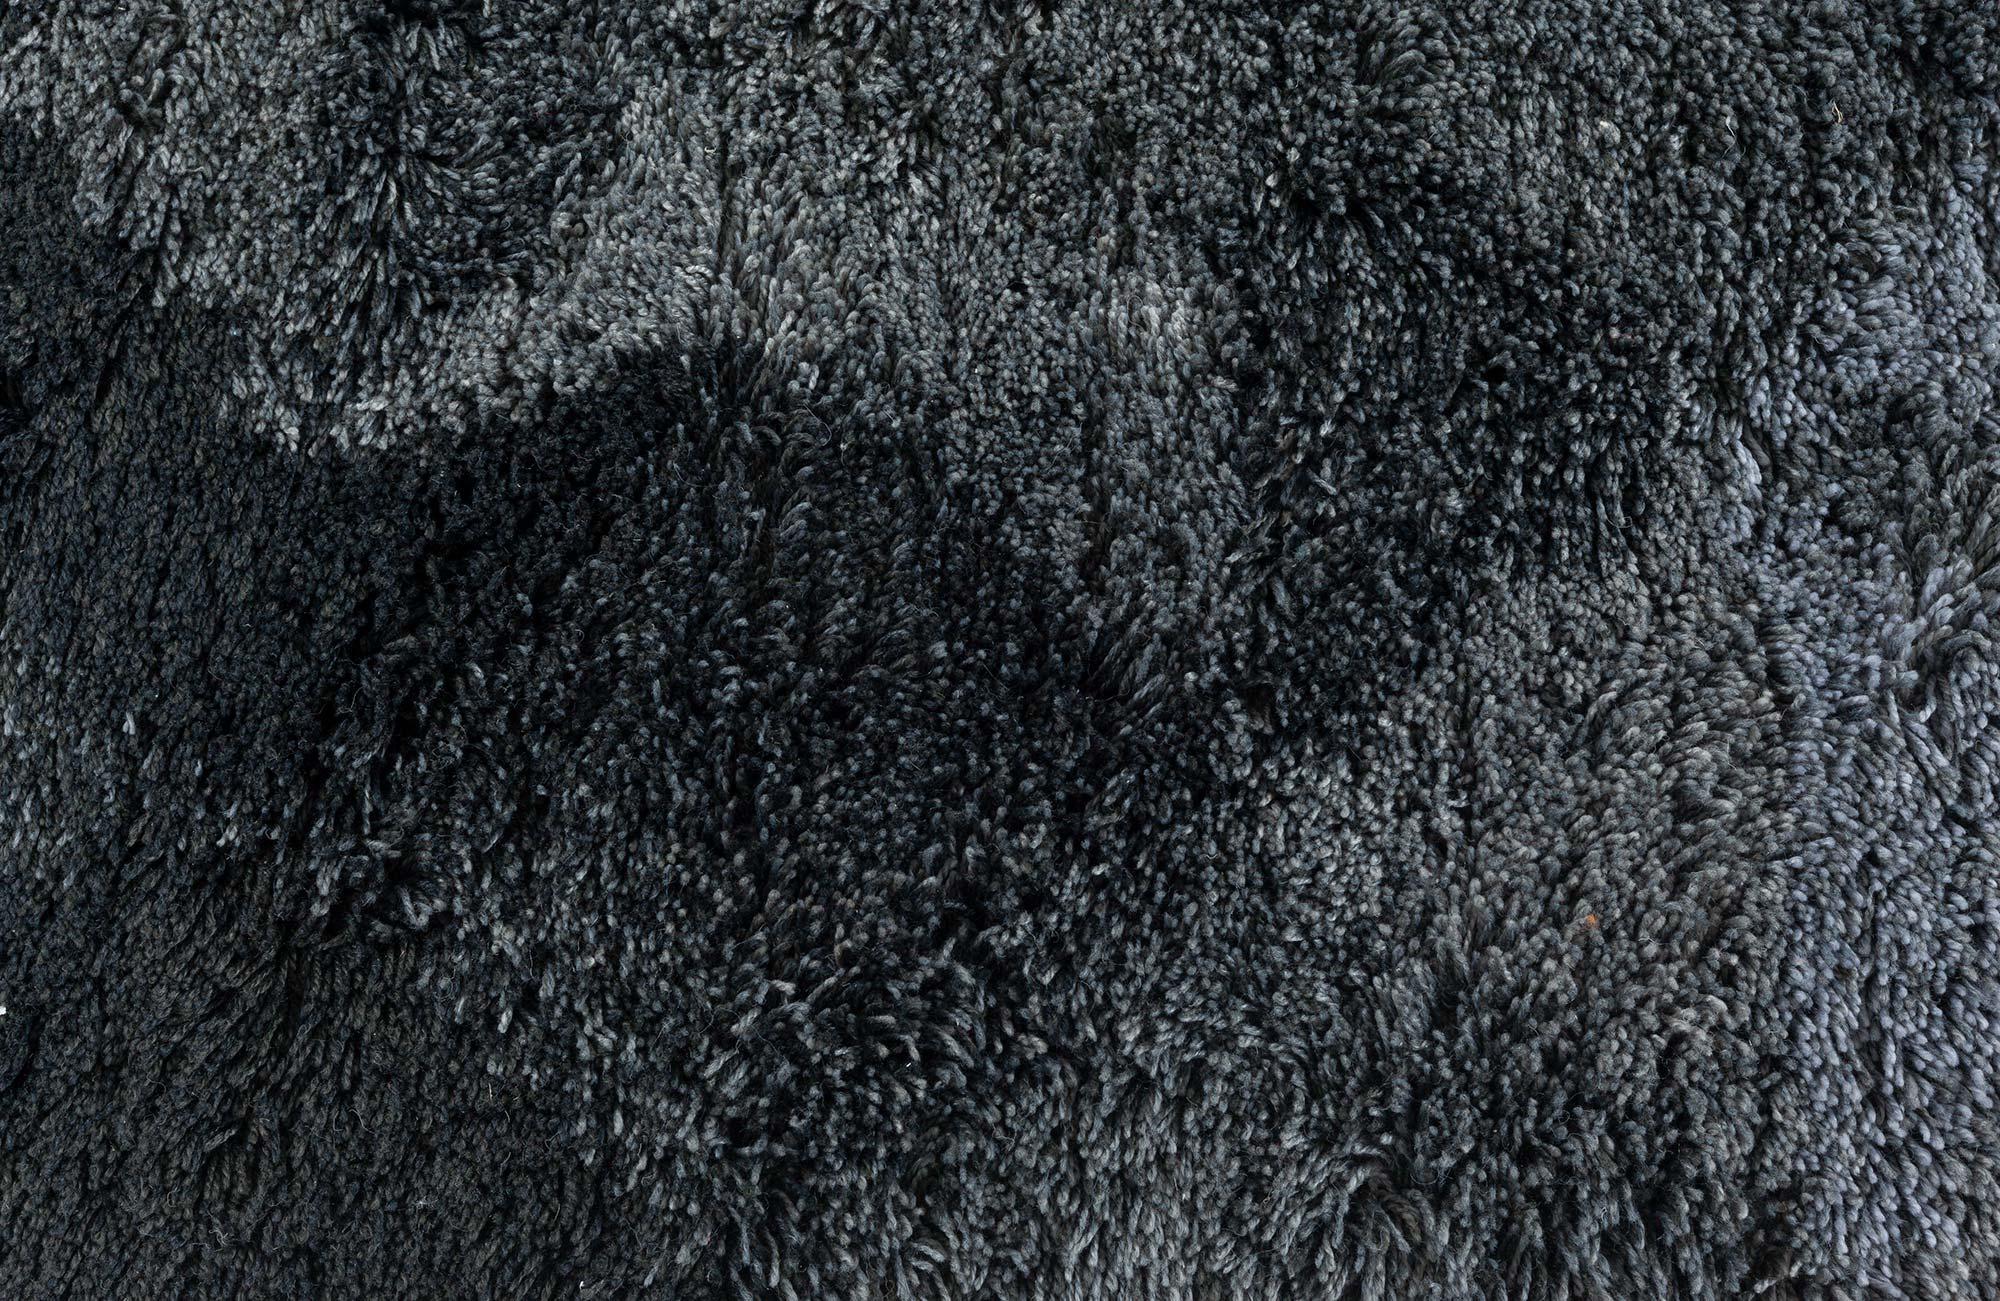 Contemporary shag rug by Doris Leslie Blau.
Size: 4.1